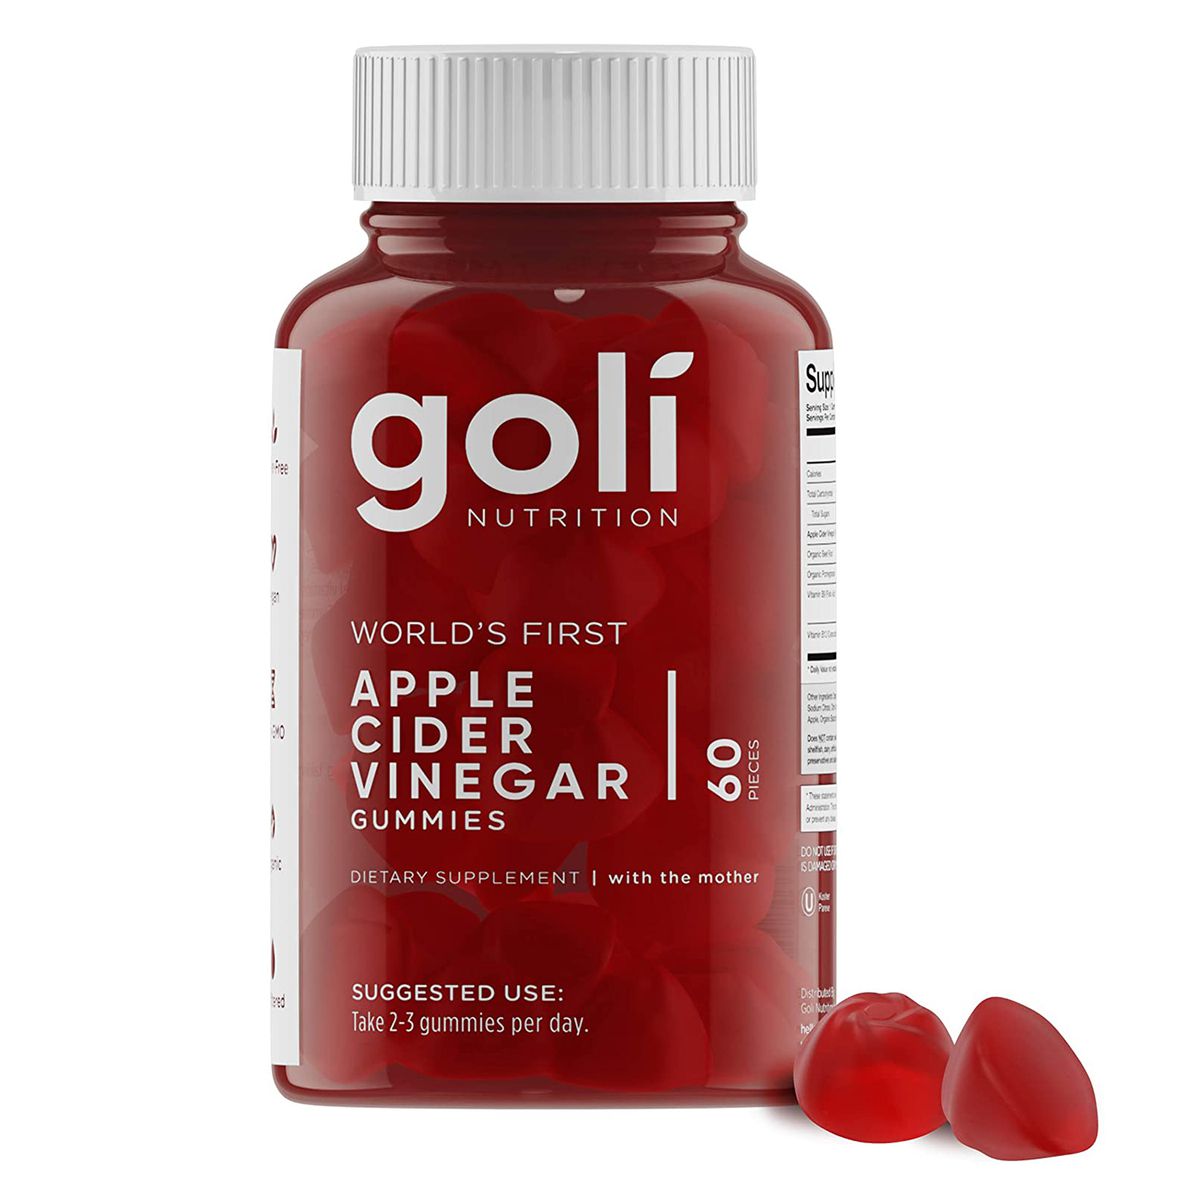 Goli Apple Cider Vinegar Gummies Are on Sale on Amazon | InStyle